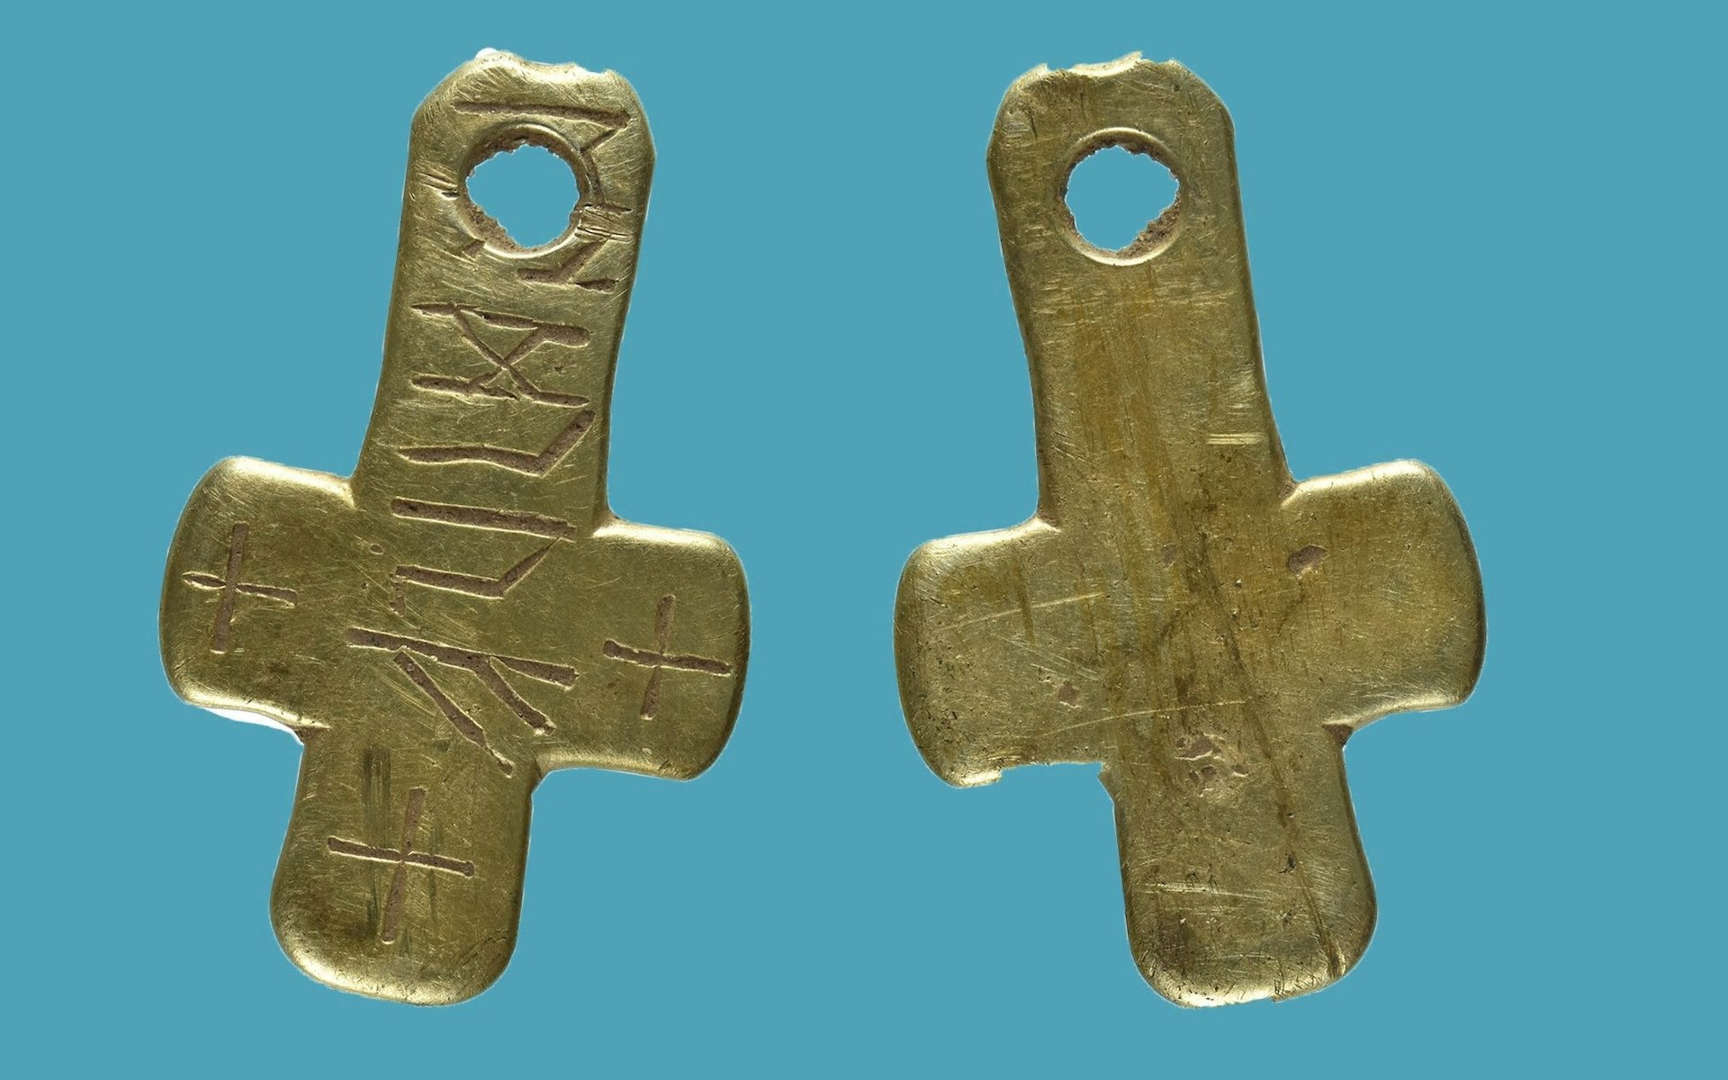 Raně středověký zlatý kříž s runami odhaluje neznámé anglosaské jméno